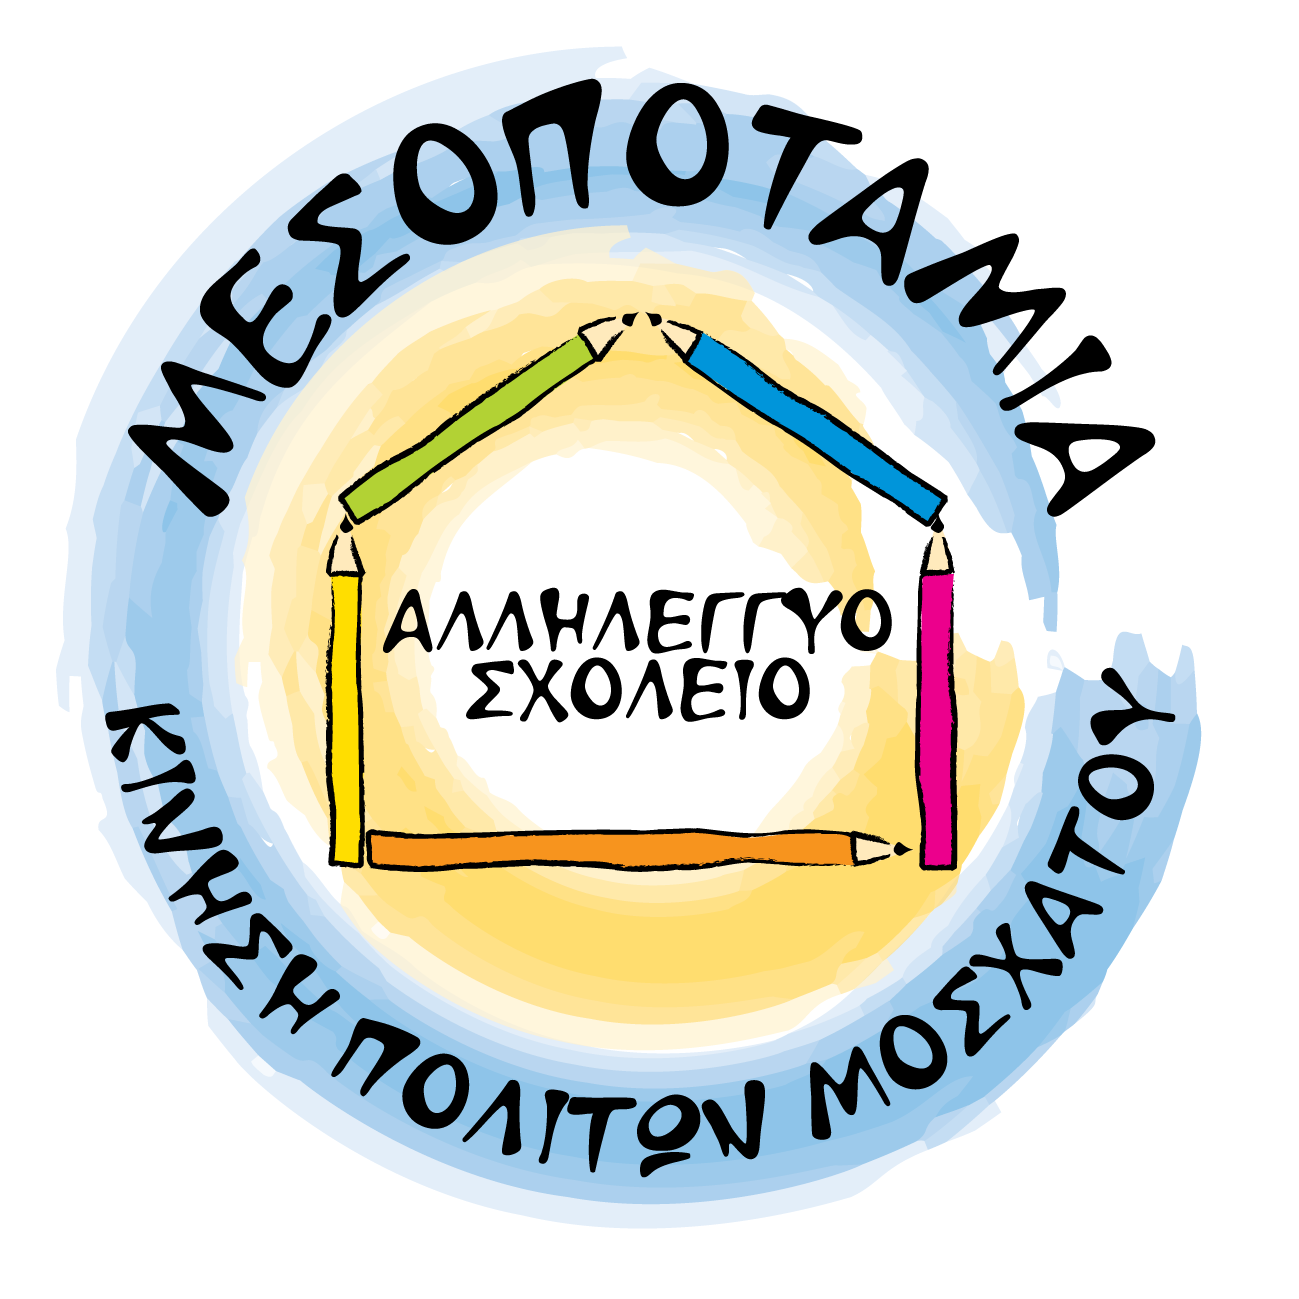 Αλληλέγγυο Σχολείο Μεσοποταμίας | Request for new user account logo